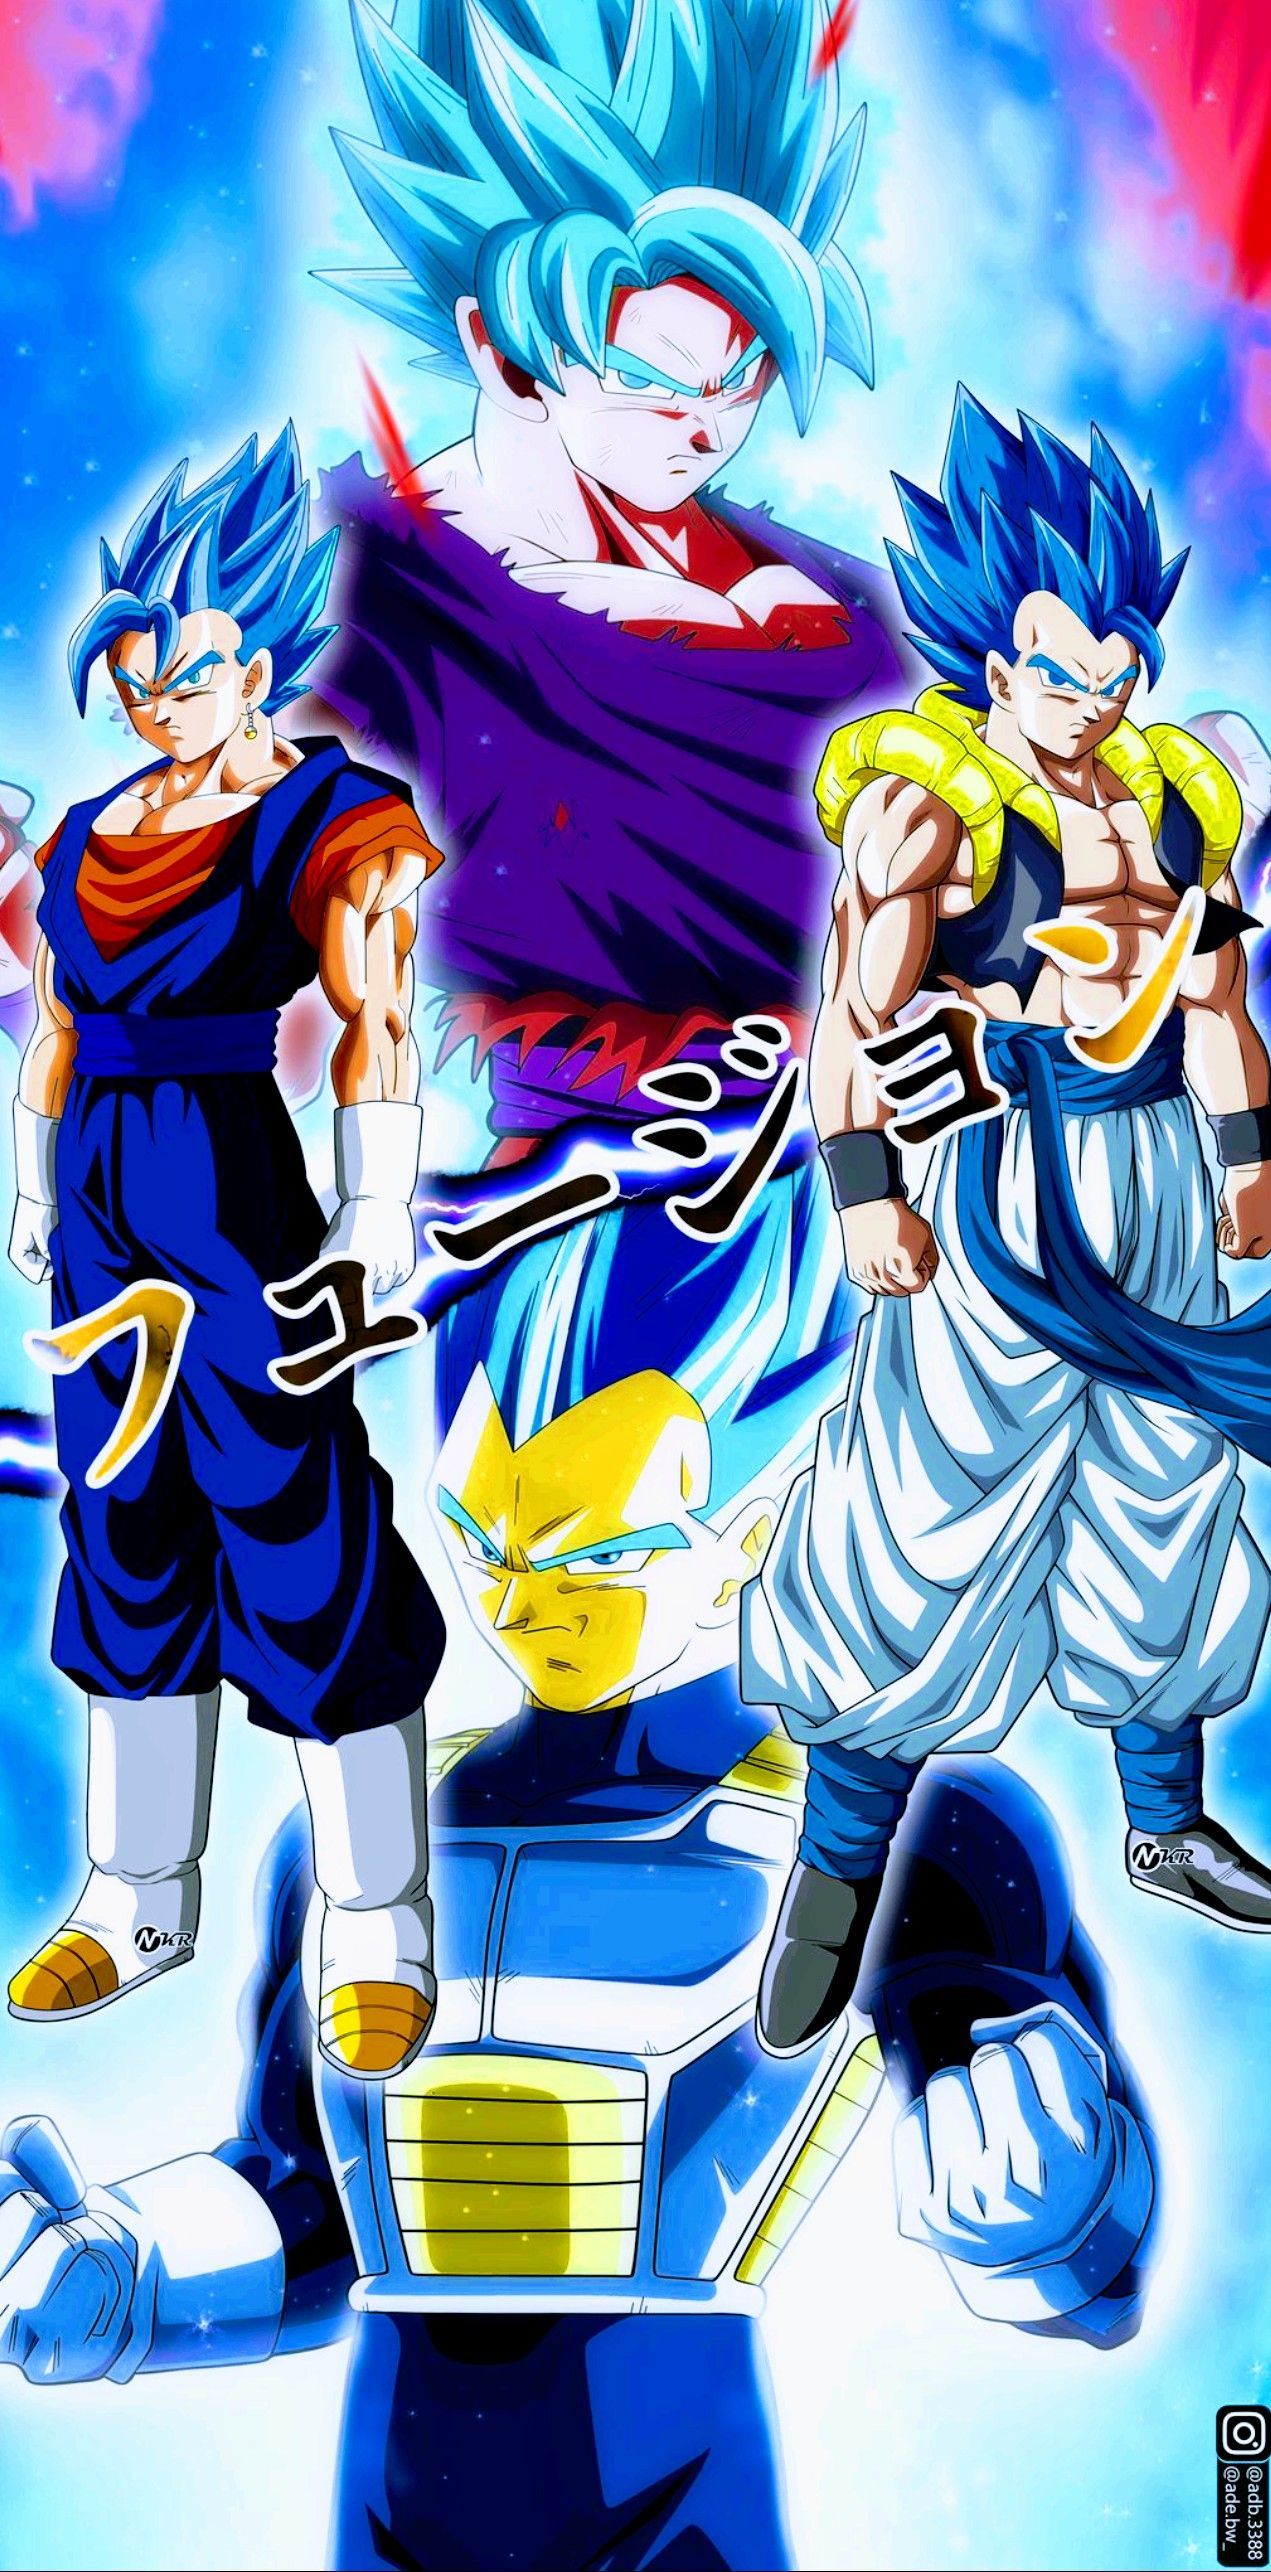 Goku & Vegeta, Dragon Ball Super. Anime dragon ball super, Dragon ball artwork, Dragon ball super art